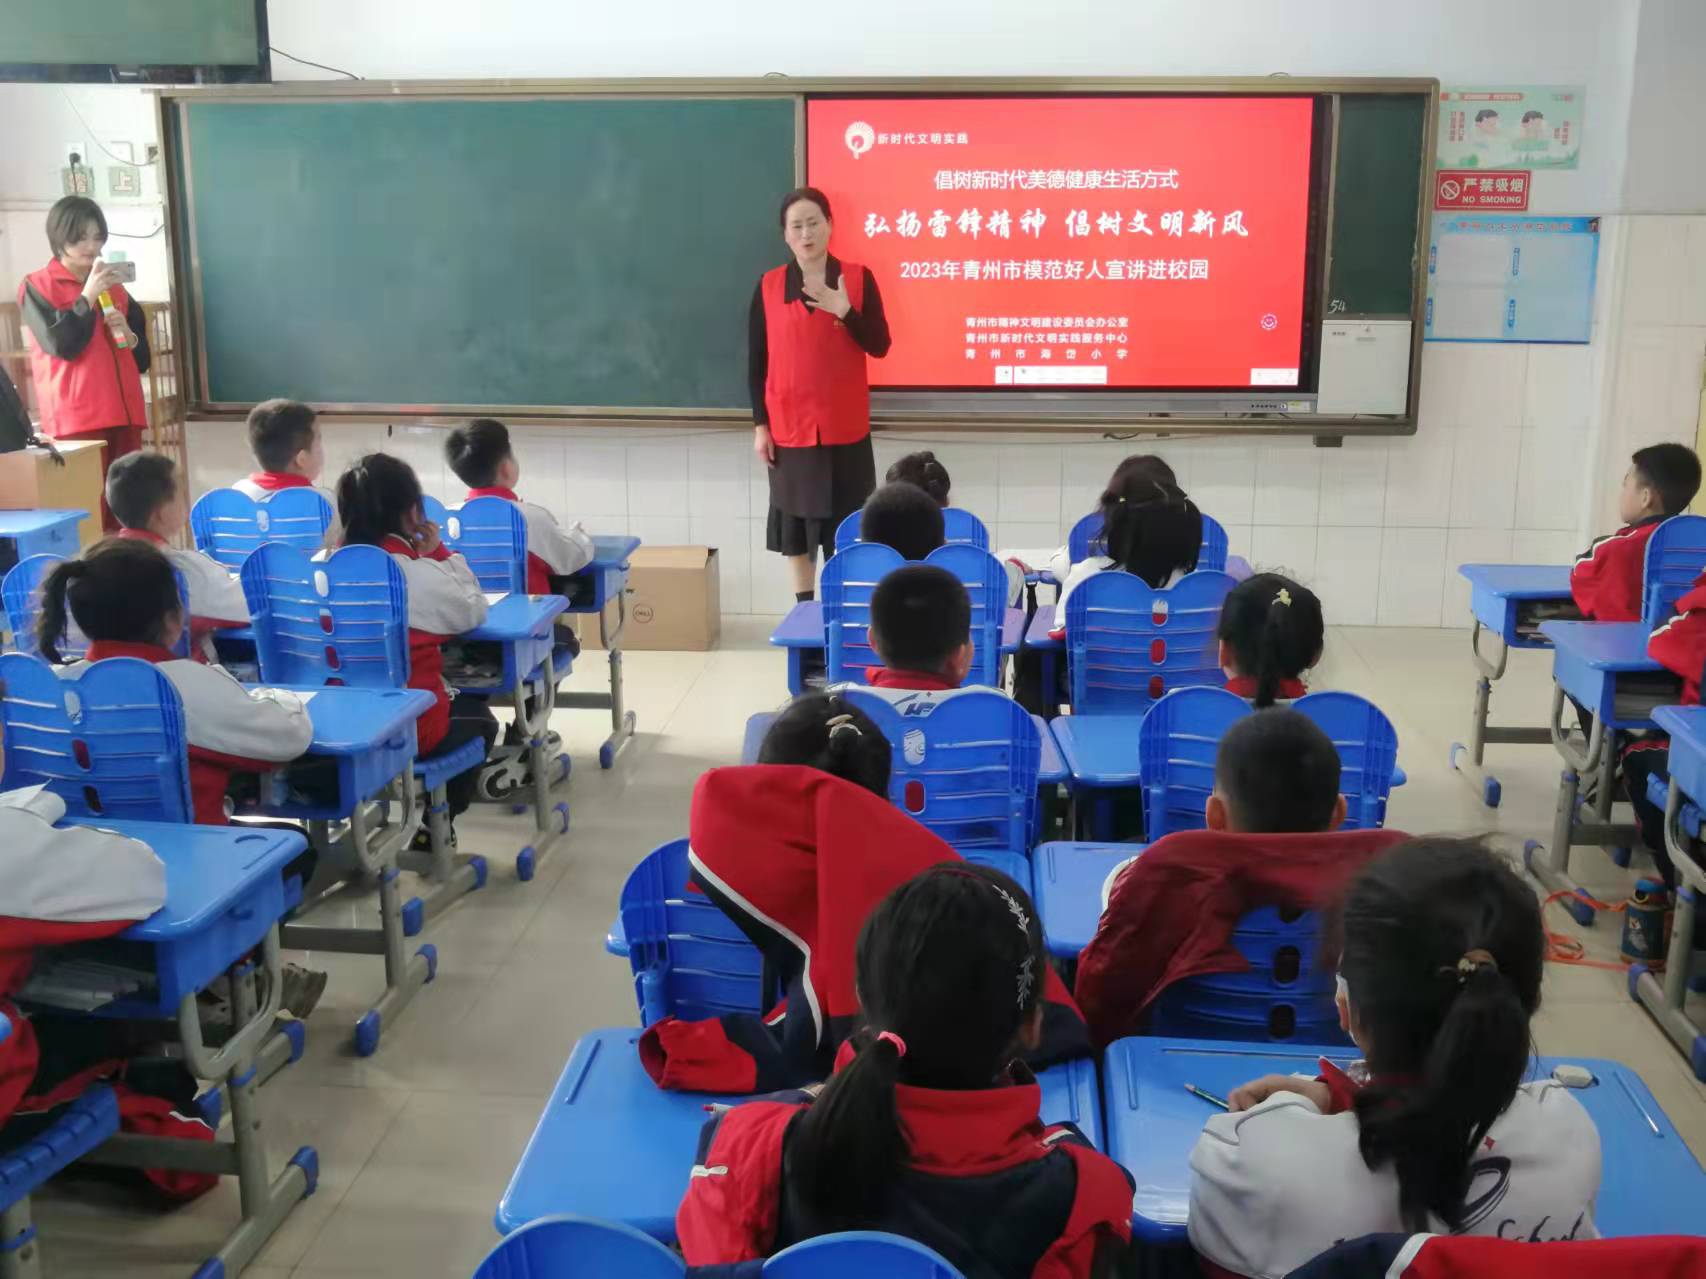 青州市定期举办模范好人宣讲进校园活动。